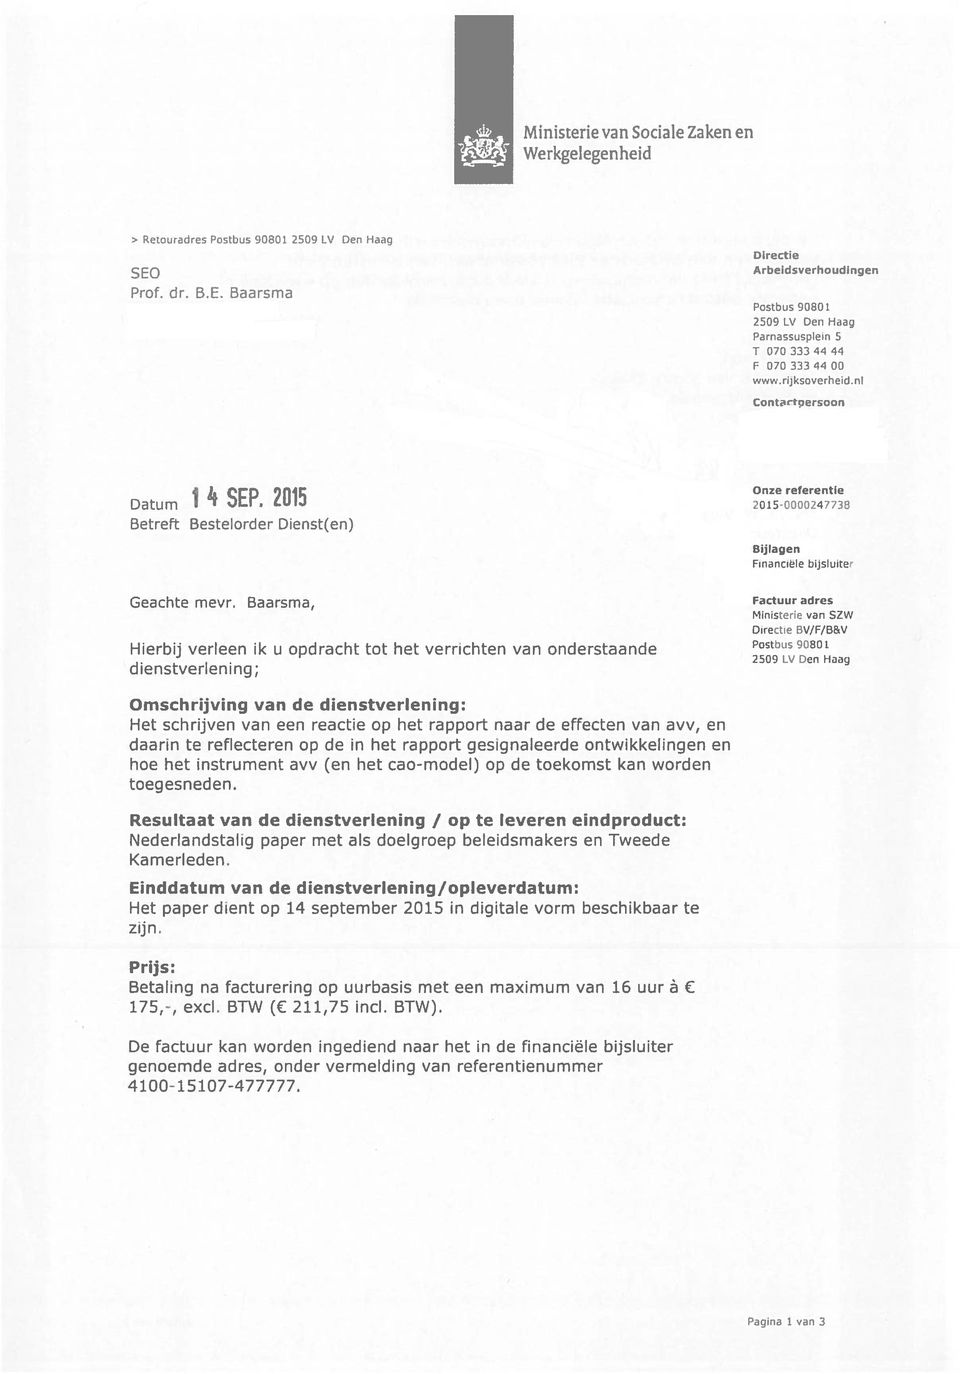 Baarsma, Factuuradres Ministene van SZW Directie BV/F/B&V Hierbij verleen 1k u opdracht tot het verrichten van onderstaande 2500 LV Den Haag dienstverlening; Omschrijving van de dienstverlening: Het